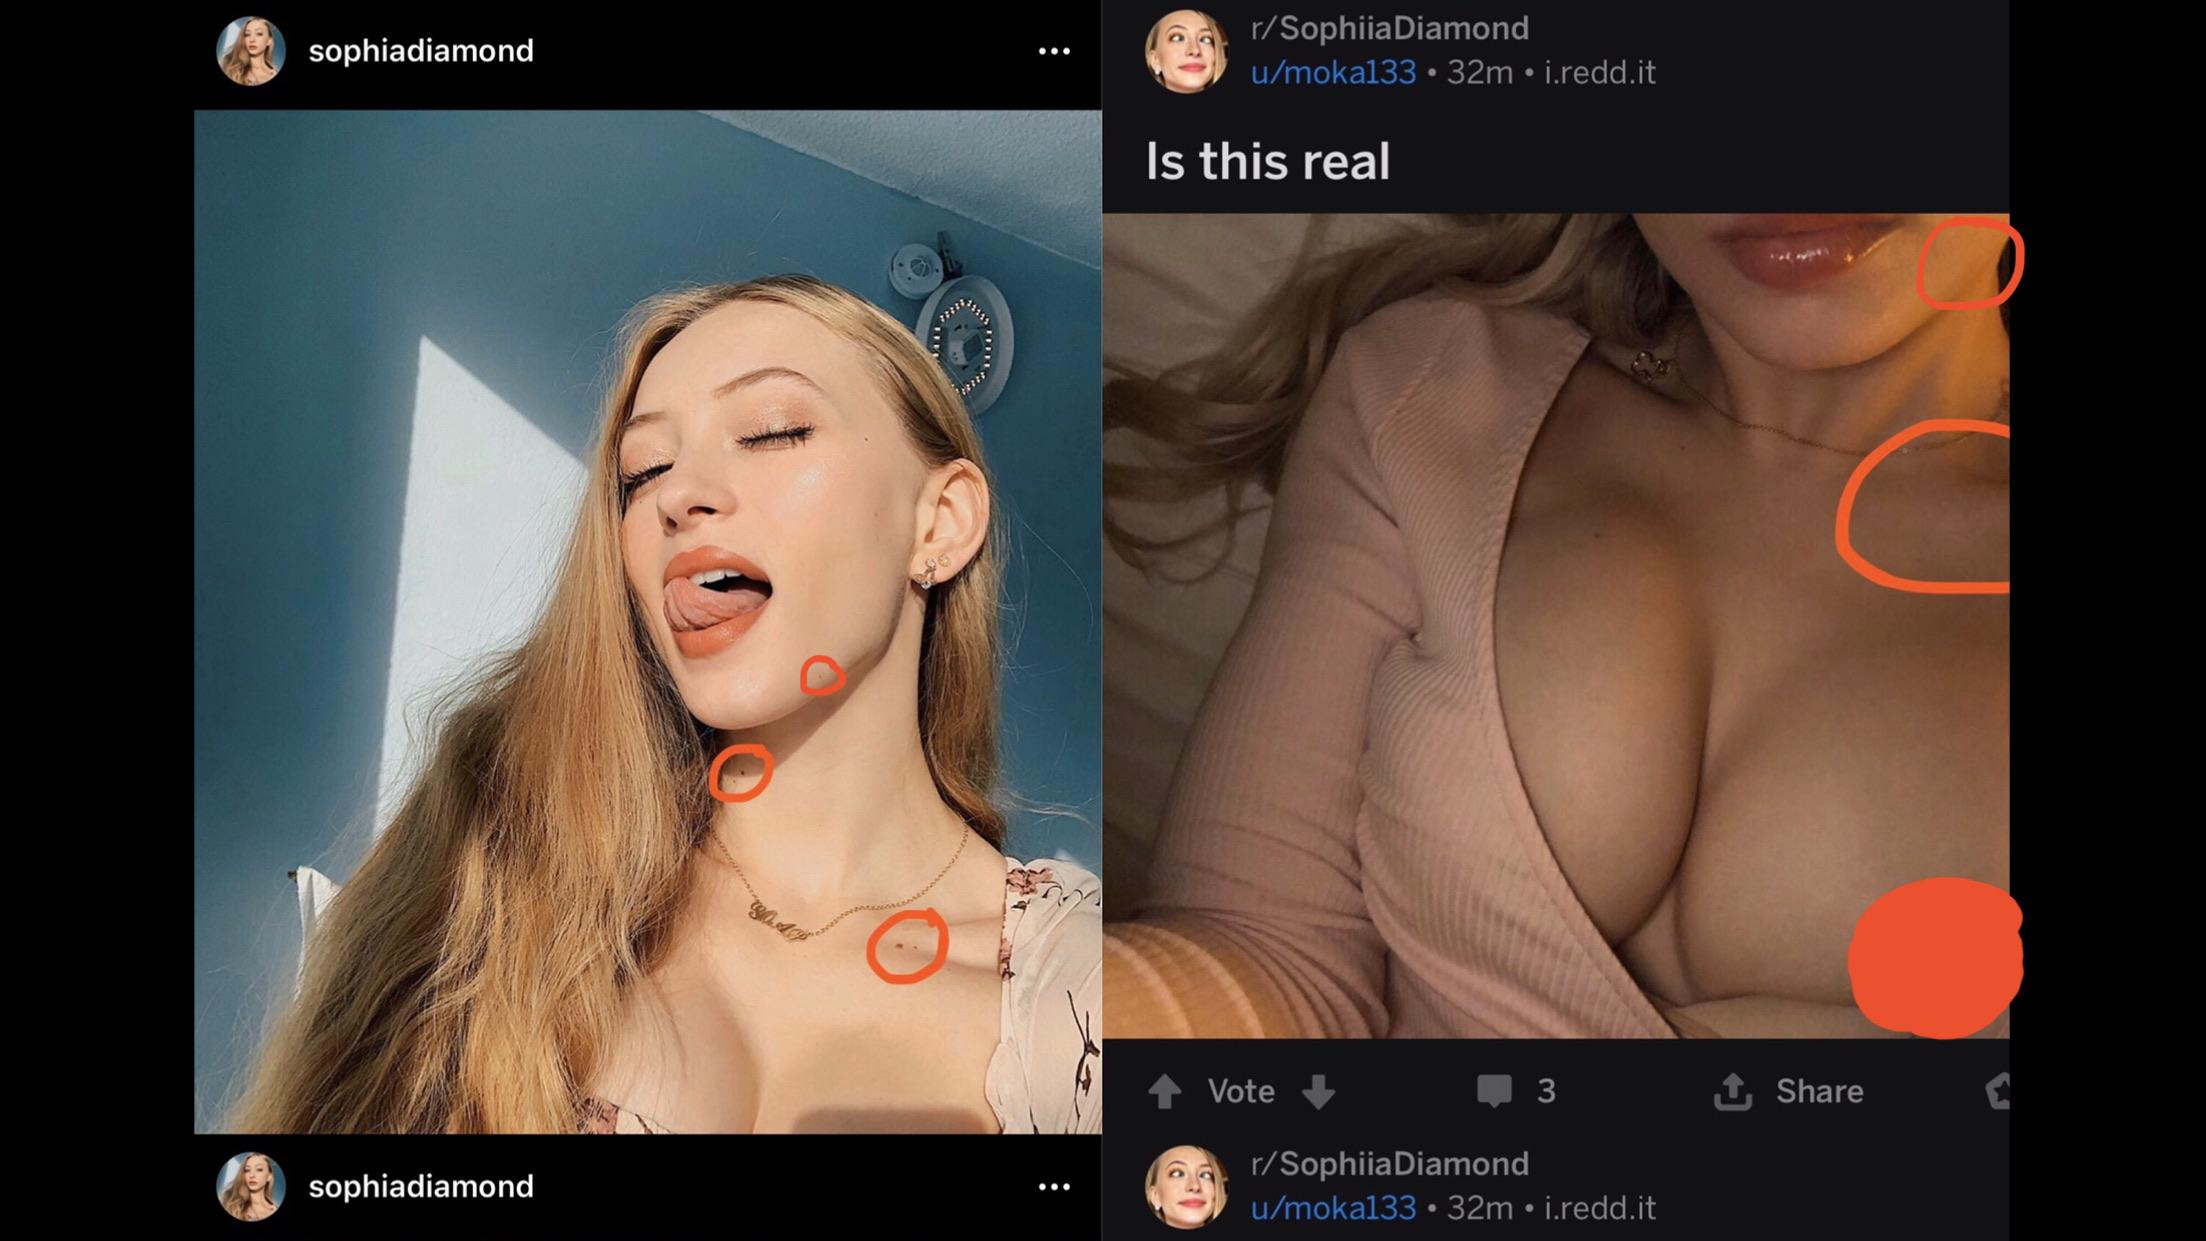 Full Video: Sophia Diamond Nude Tiktop Star Leaked!